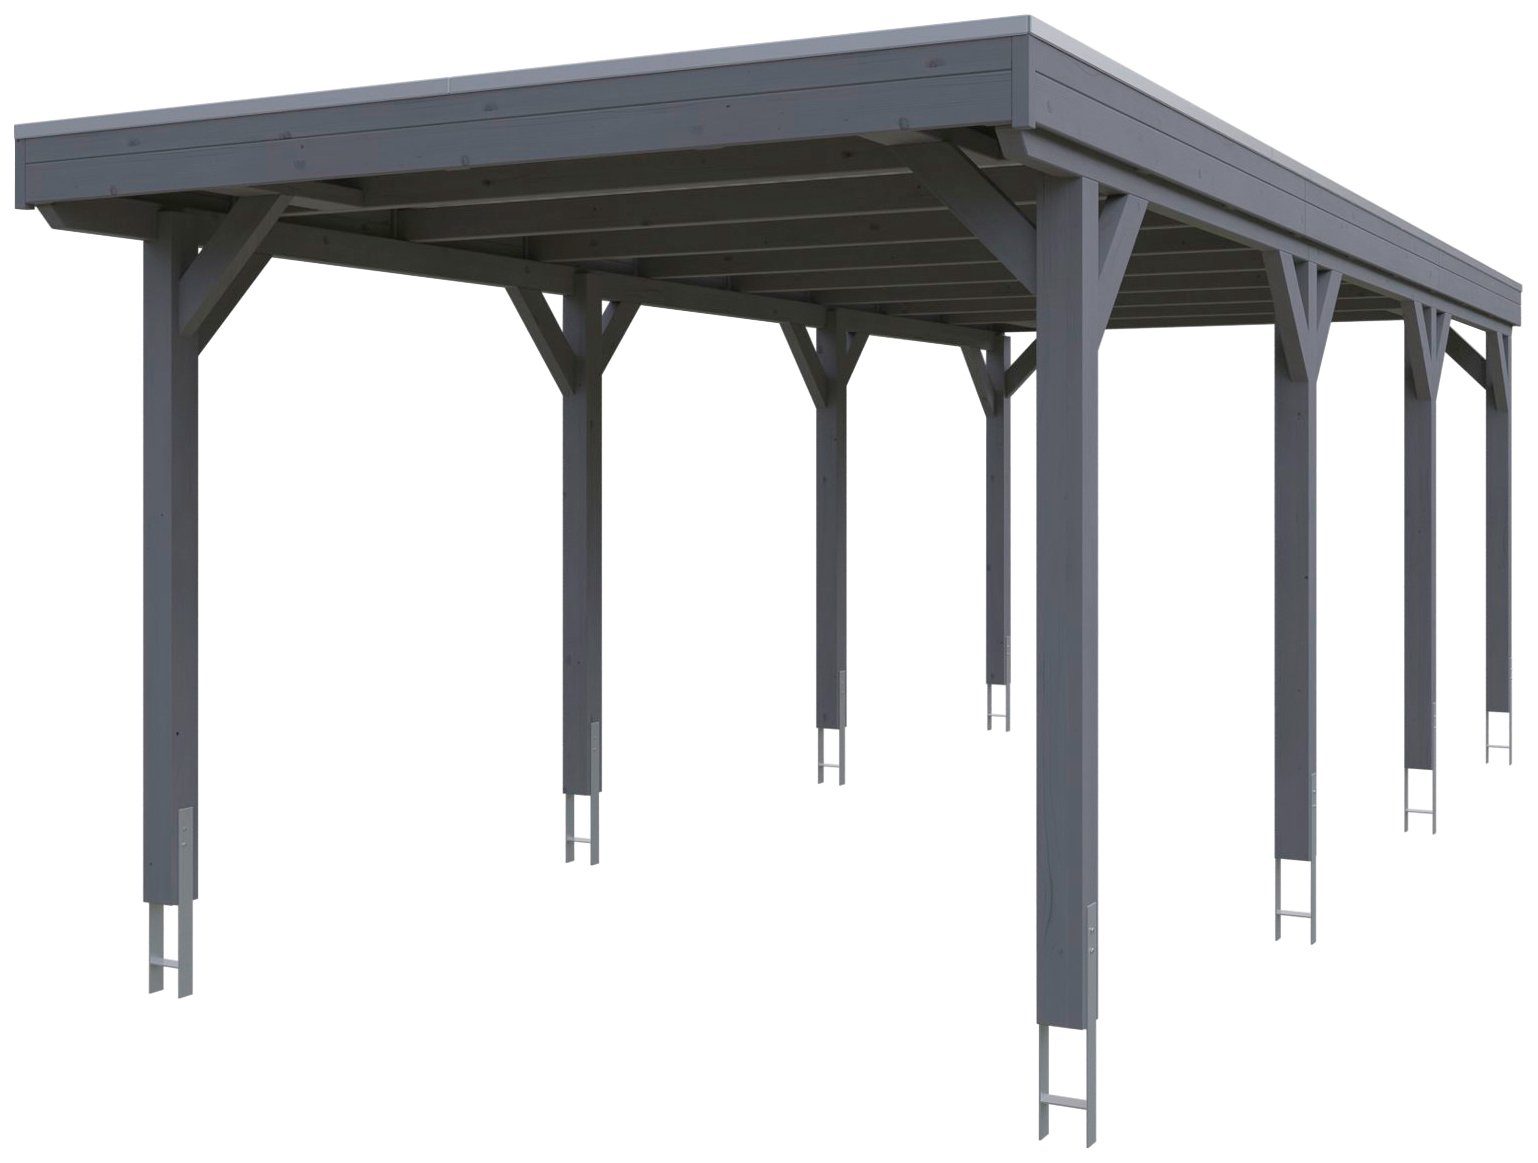 Skanholz Einzelcarport Grunewald, behandelt Aluminiumdach, mit Einfahrtshöhe, Aluminium-Dachplatten, BxT: farblich mit 321x796 schiefergrau in 289 Flachdach cm, cm